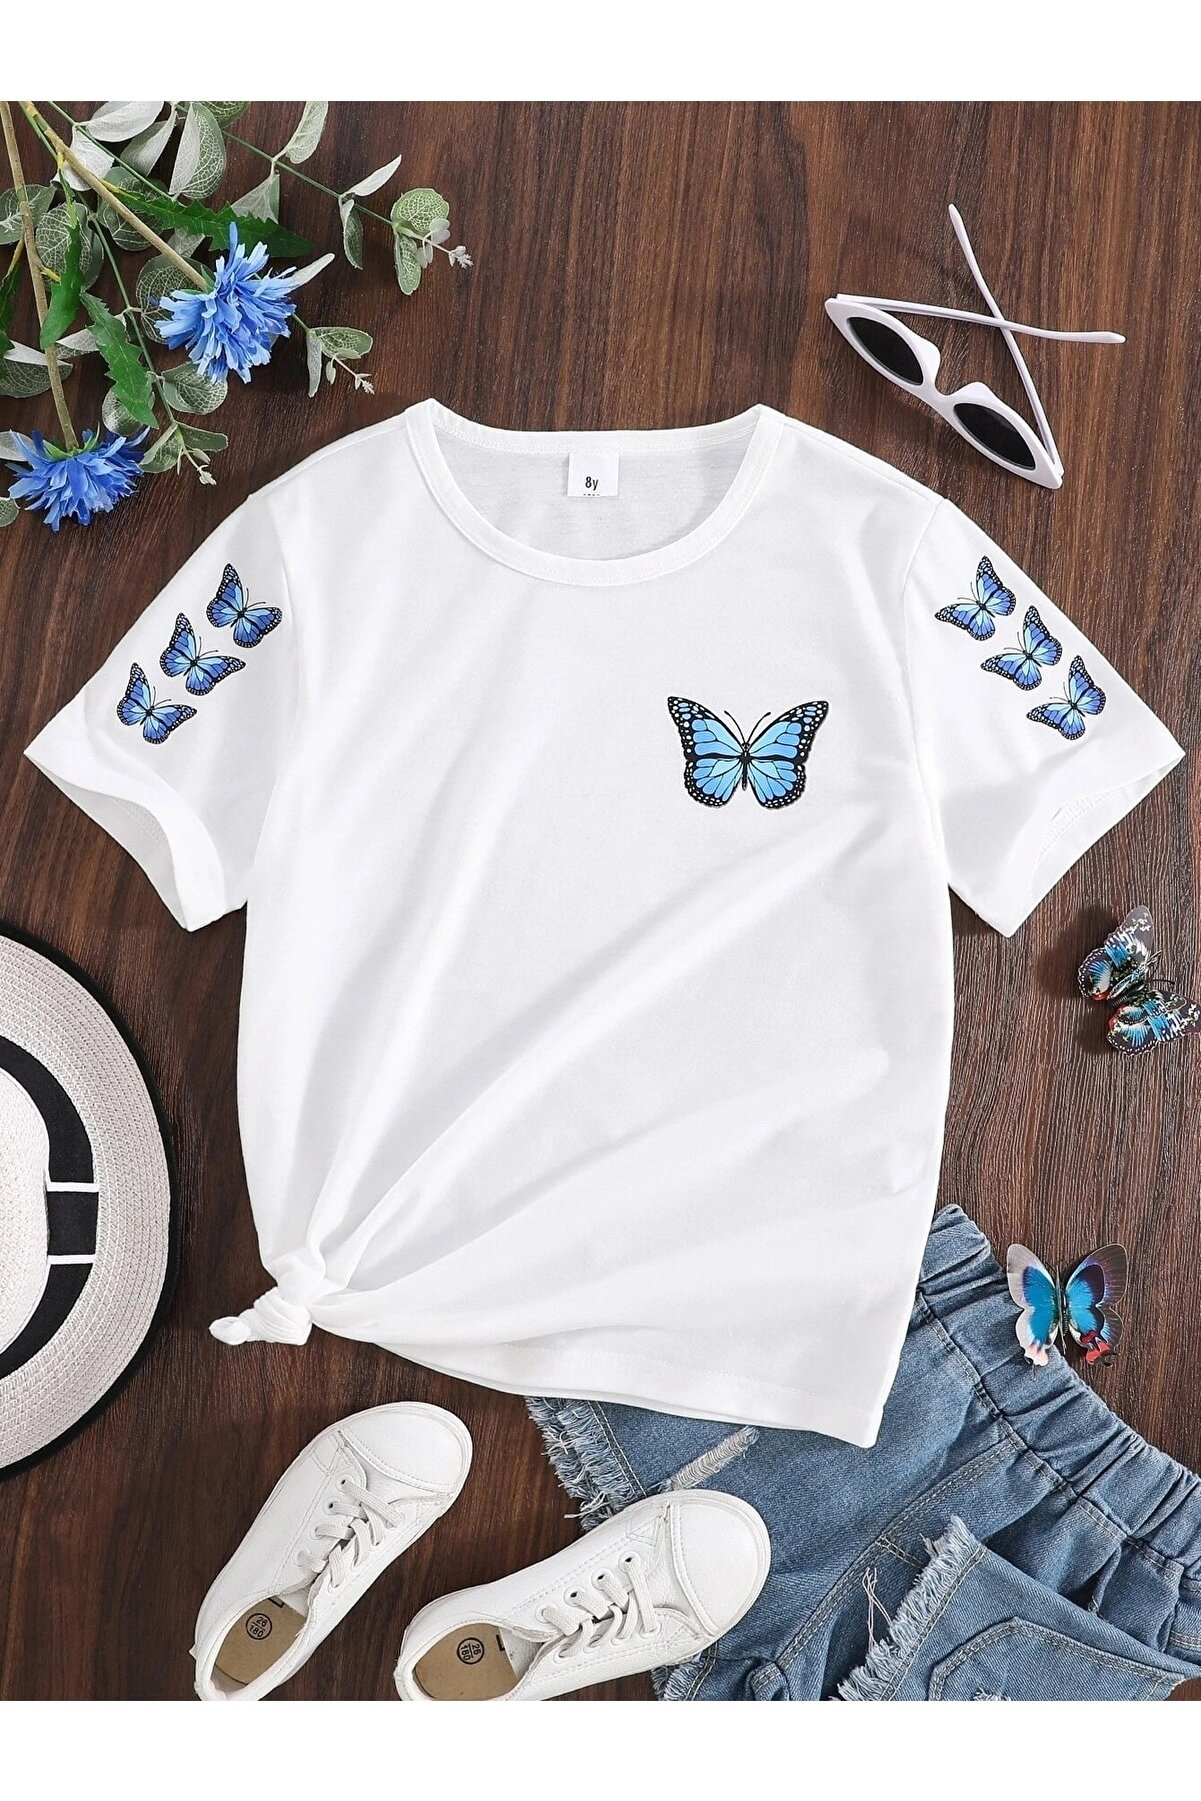 LePold Beyaz Mavi Kelebek Butterfly Baskılı Kız Tişört